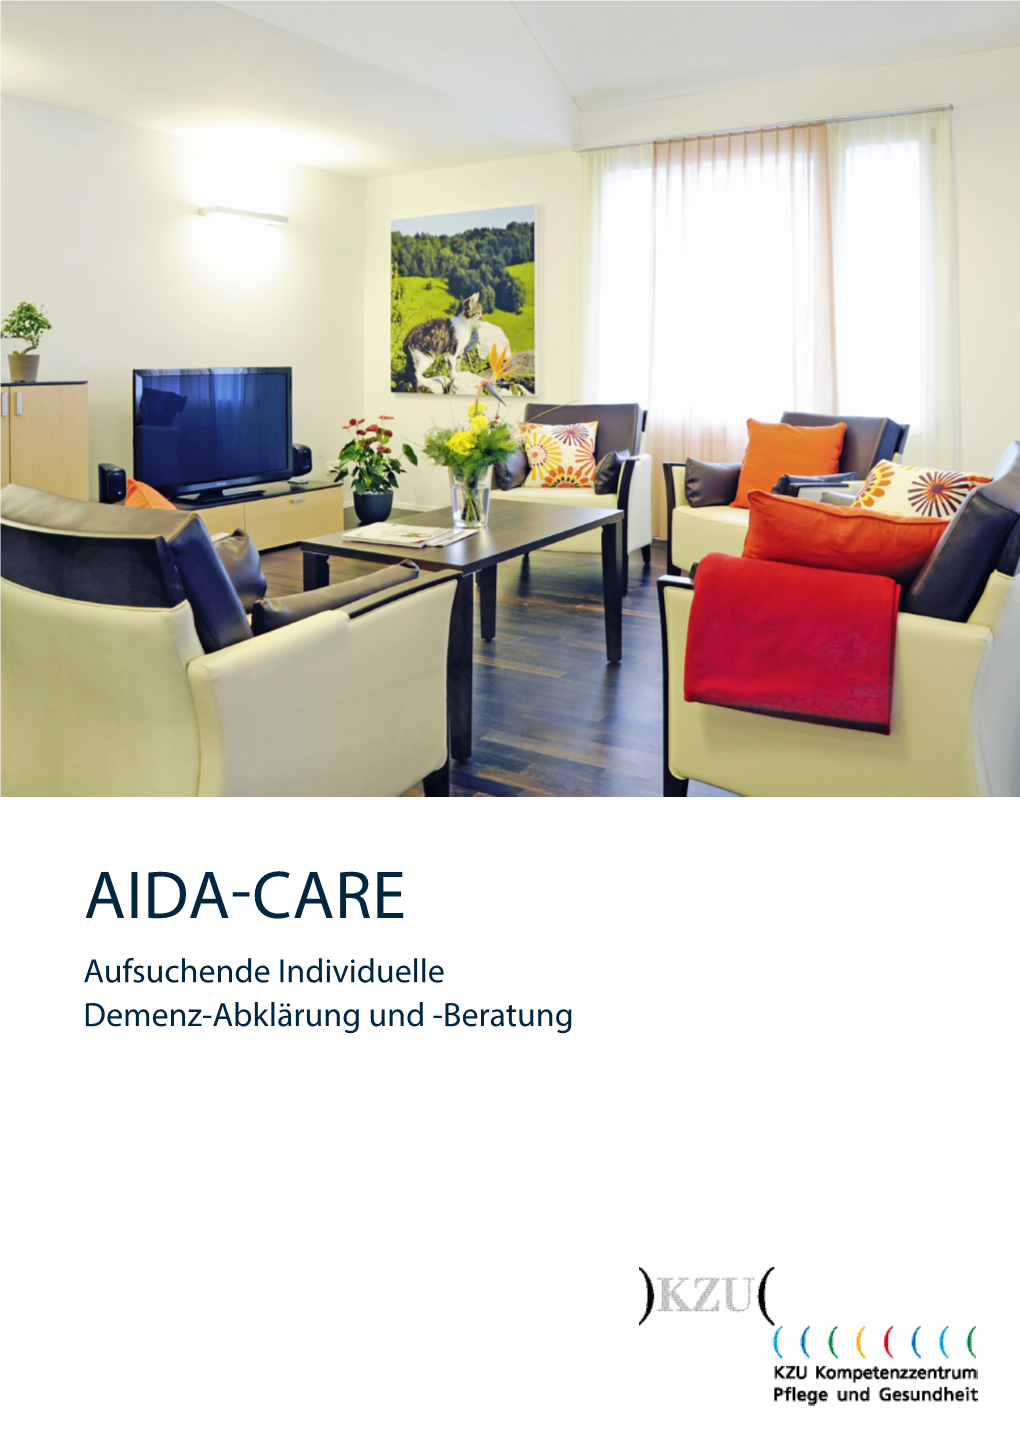 AIDA-CARE Aufsuchende Individuelle Demenz-Abklärung Und -Beratung WAS IST AIDA-CARE